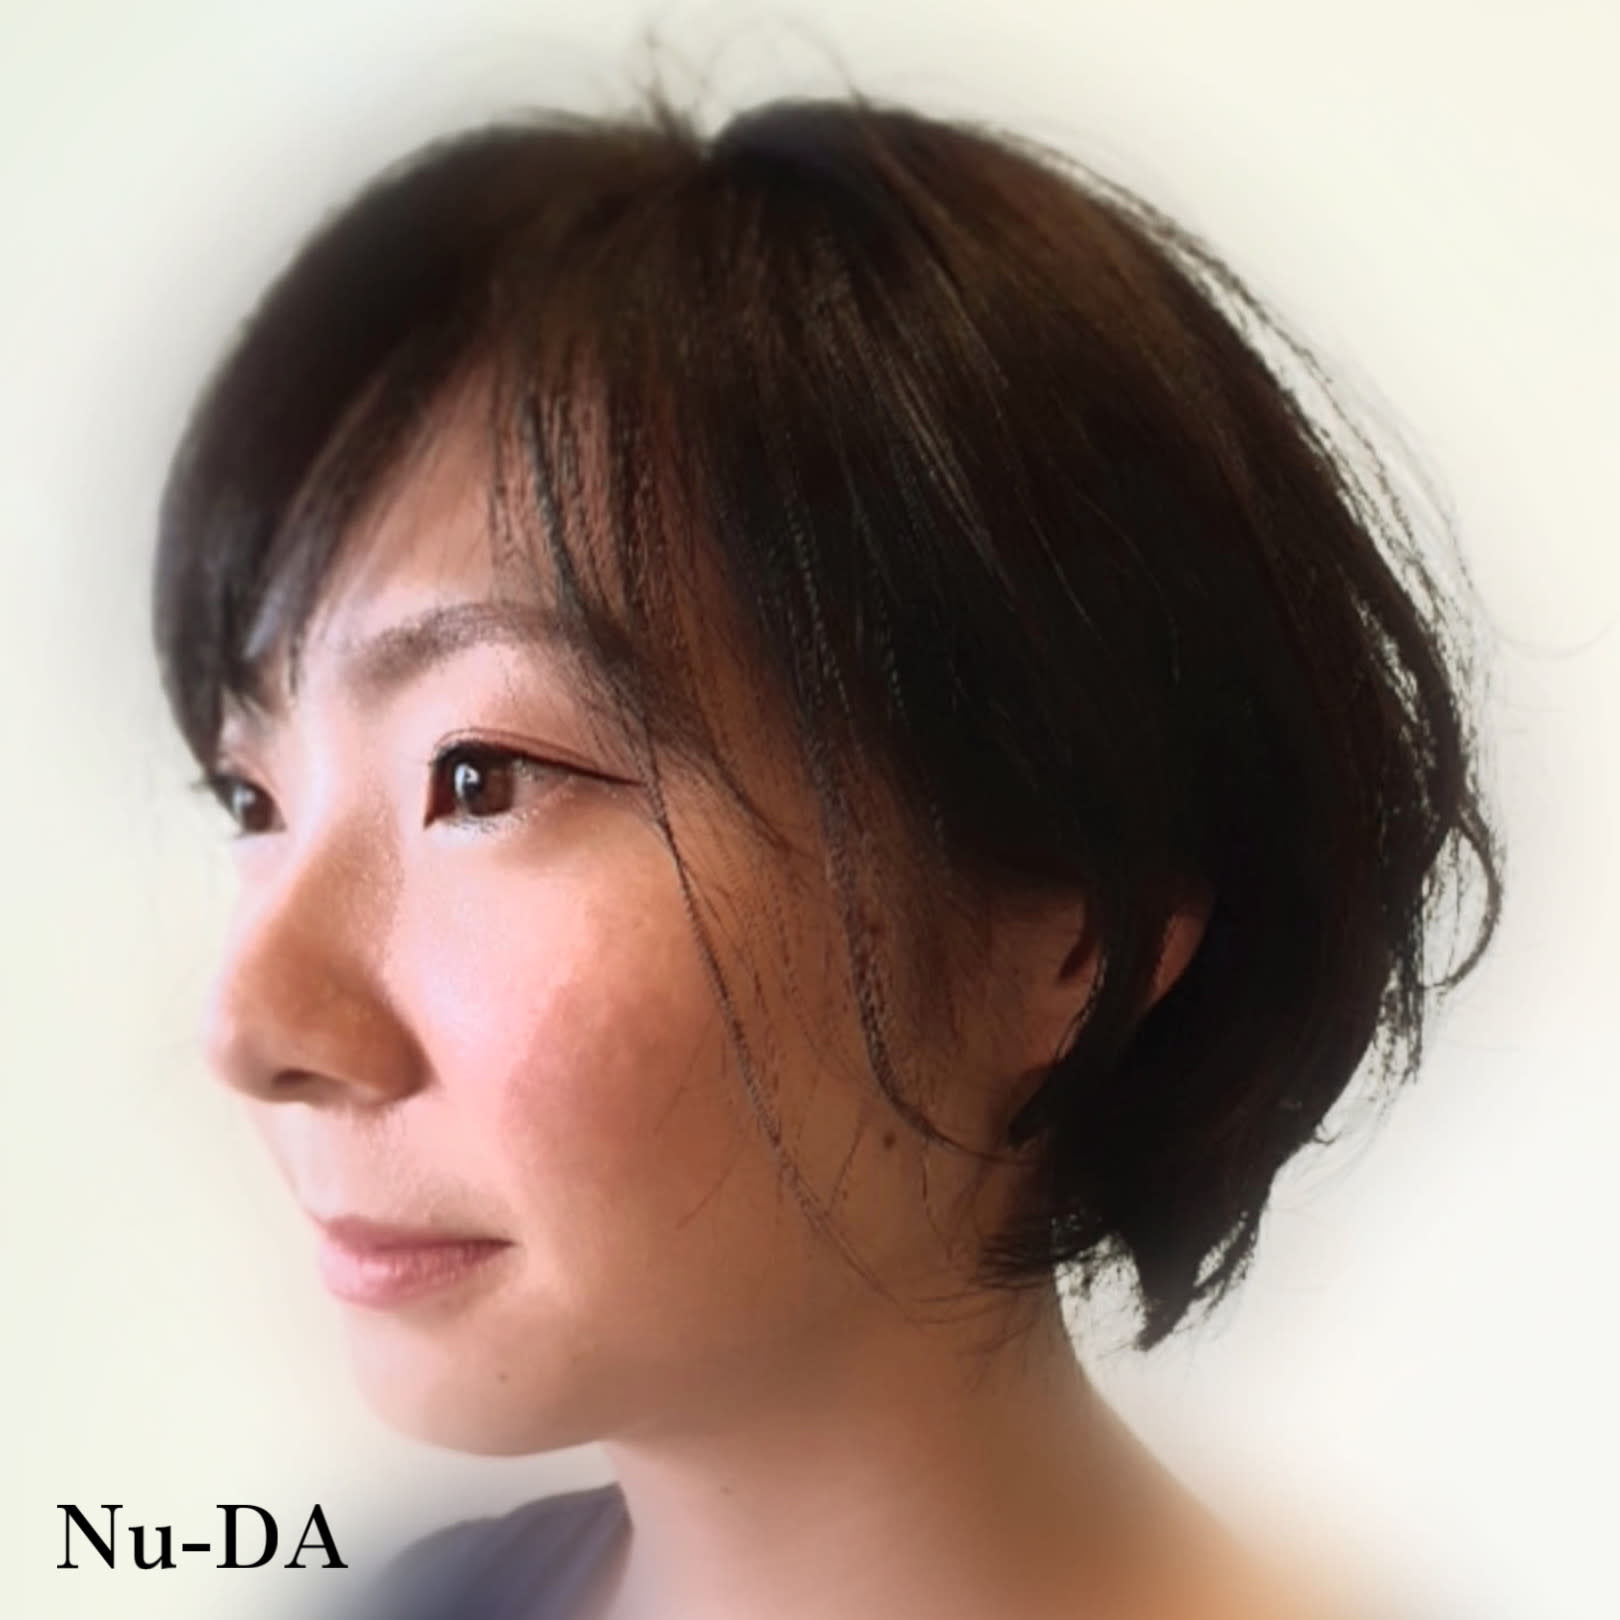 hair Nu-DA【ヘアヌーダ】のスタイル紹介。【Nu-DA】ショートパーマ